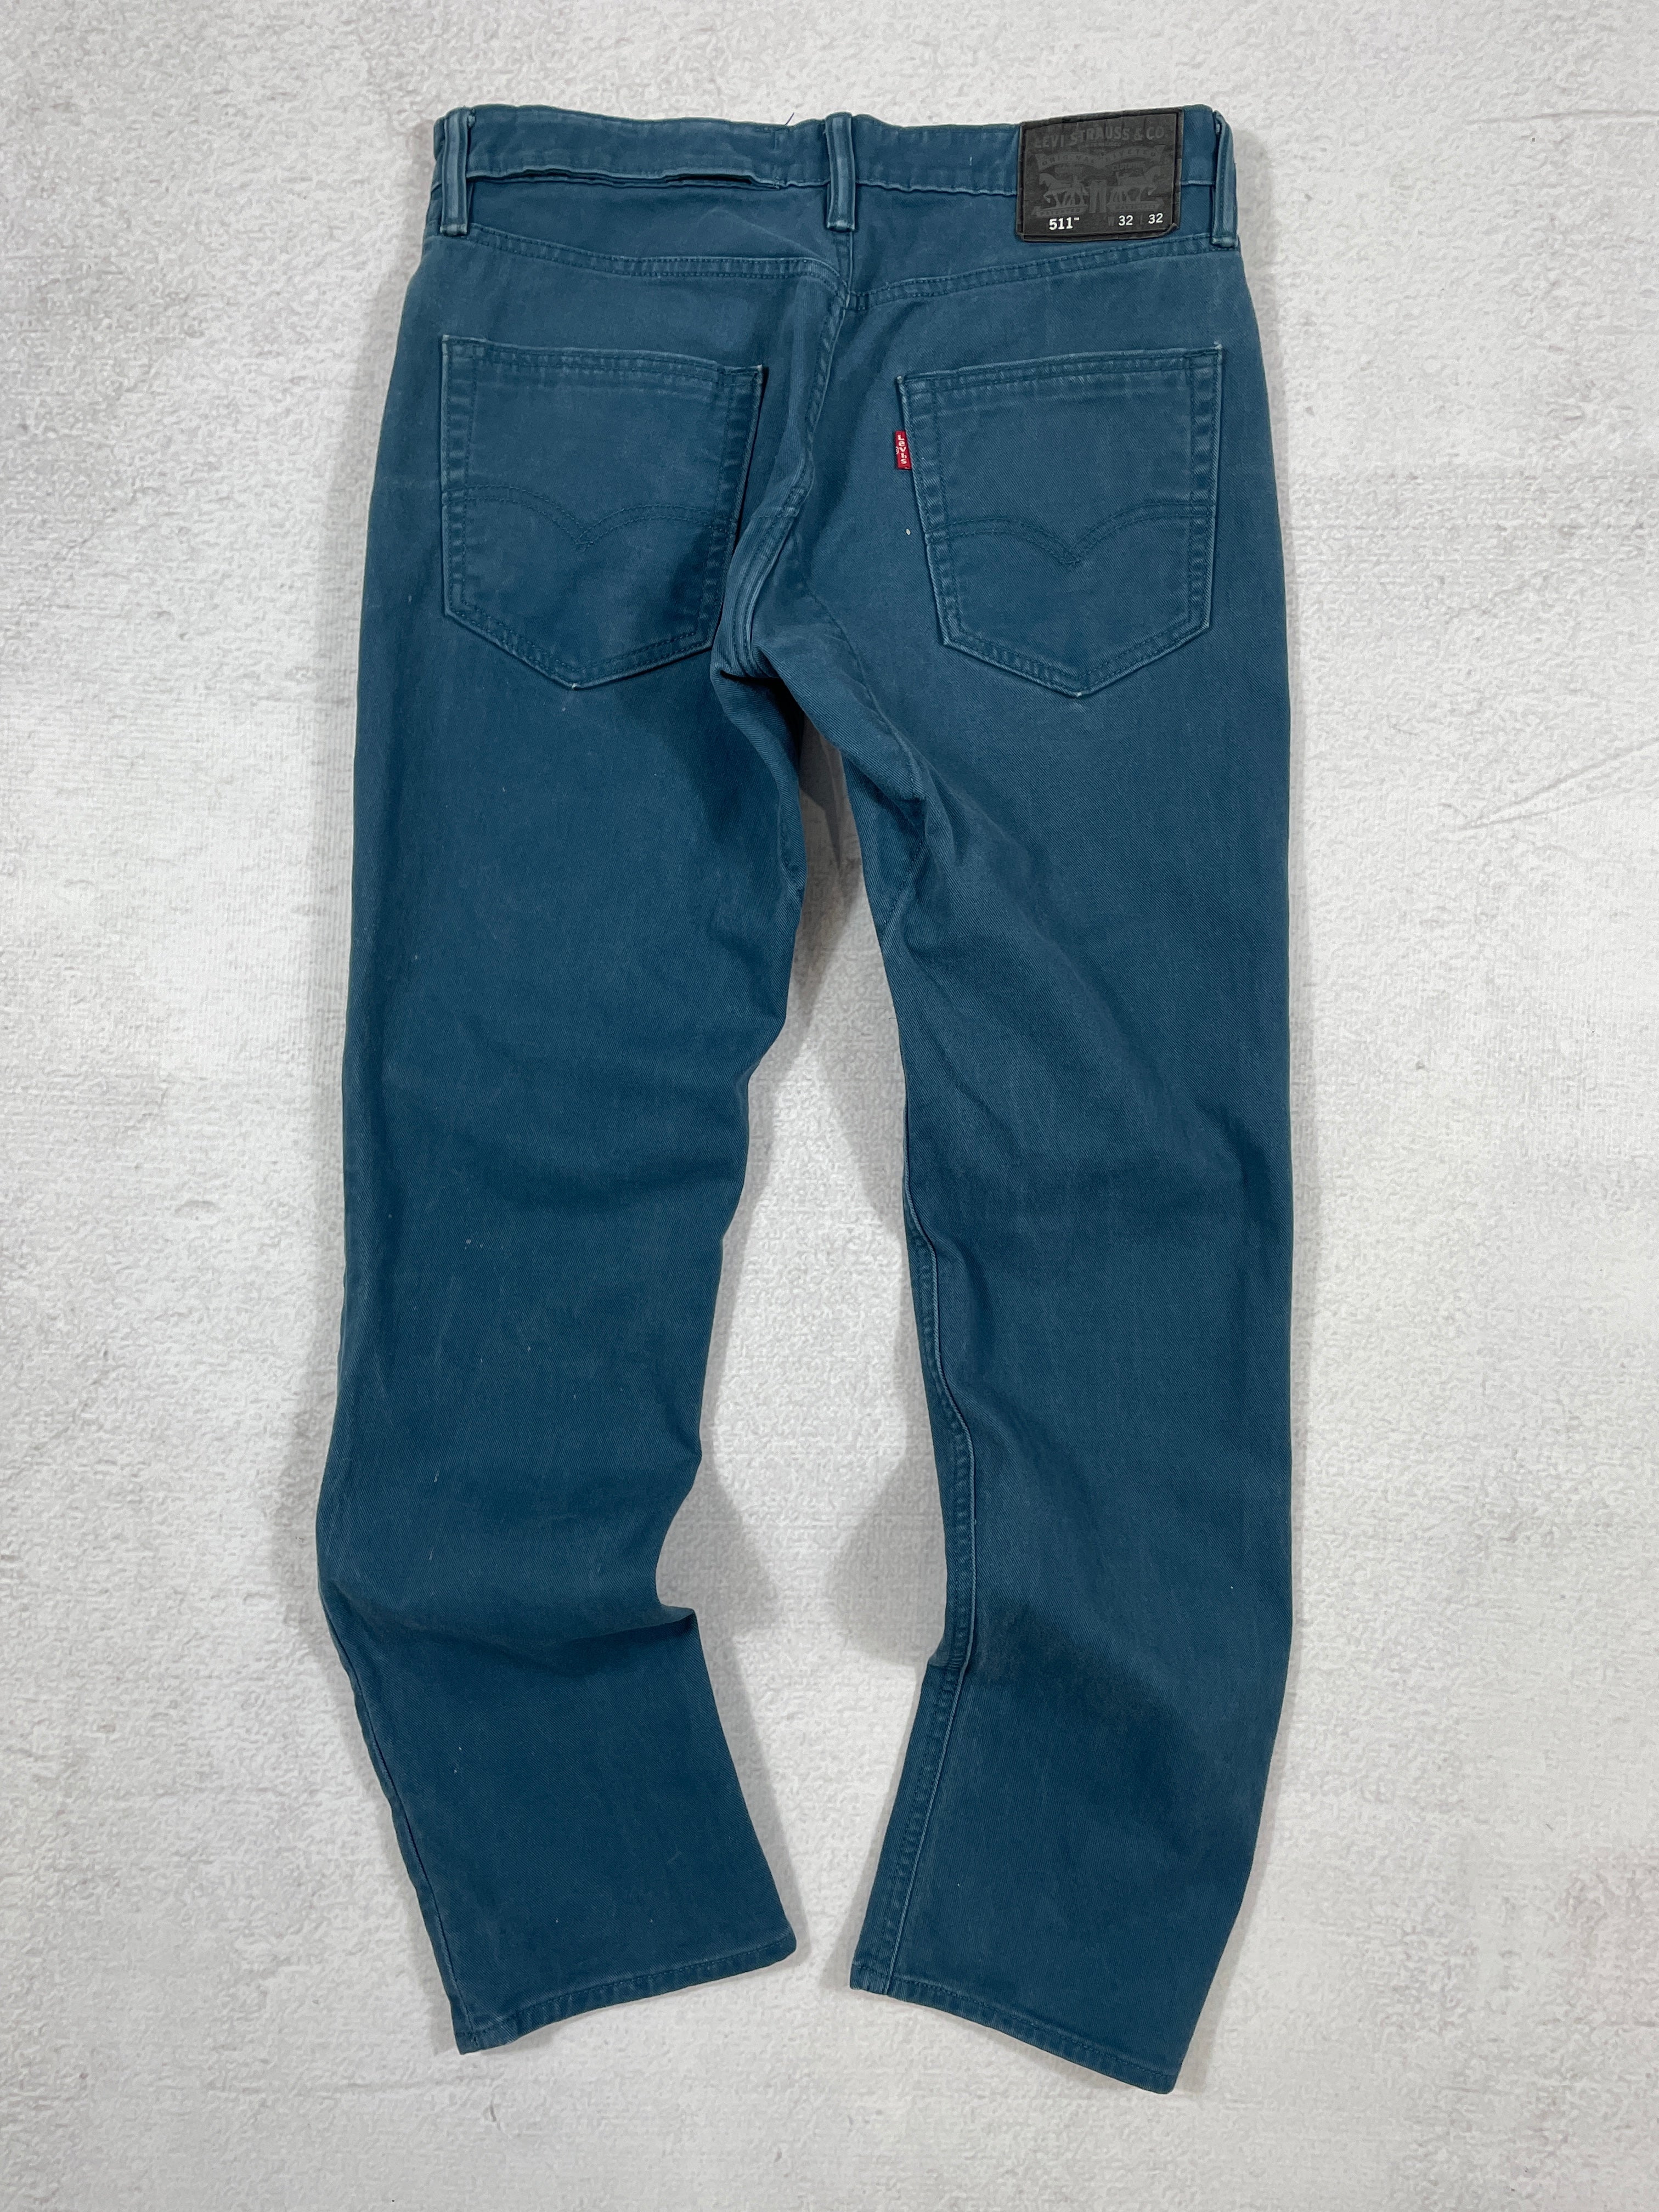 Vintage Levis 511 Jeans - Women's 32Wx32L